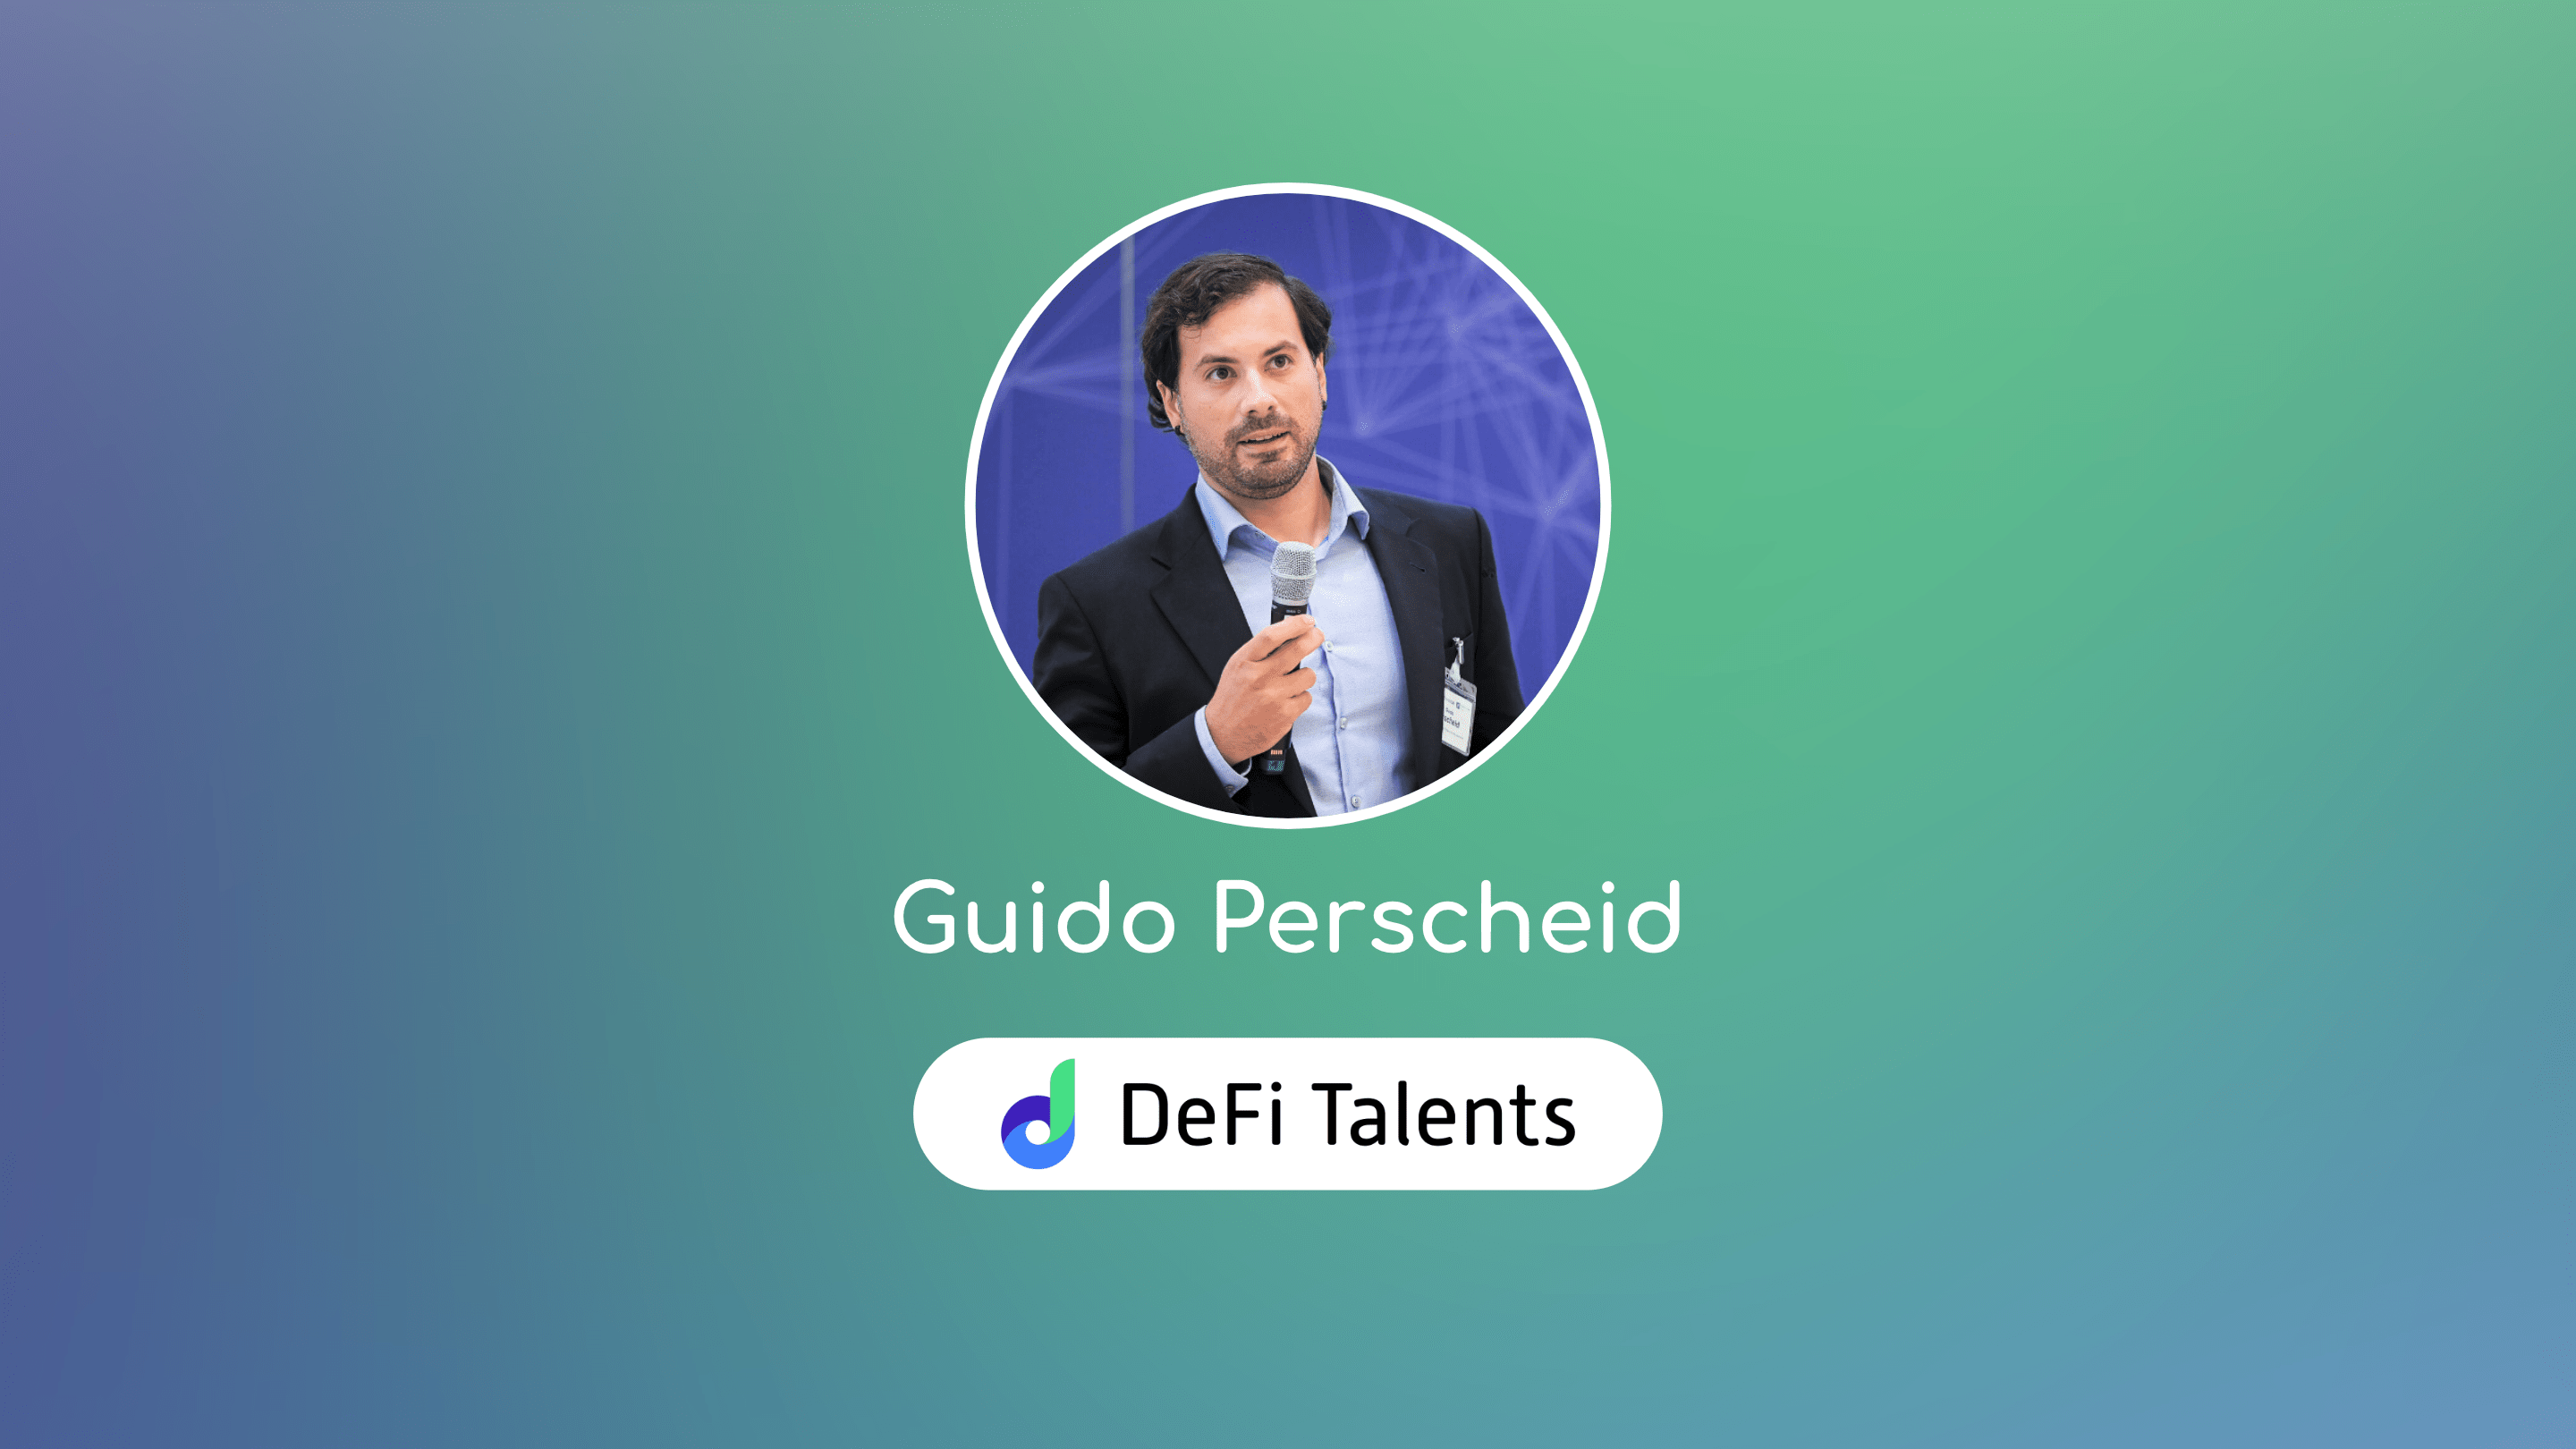 DeFi Talents Mentor – Guido Perscheid